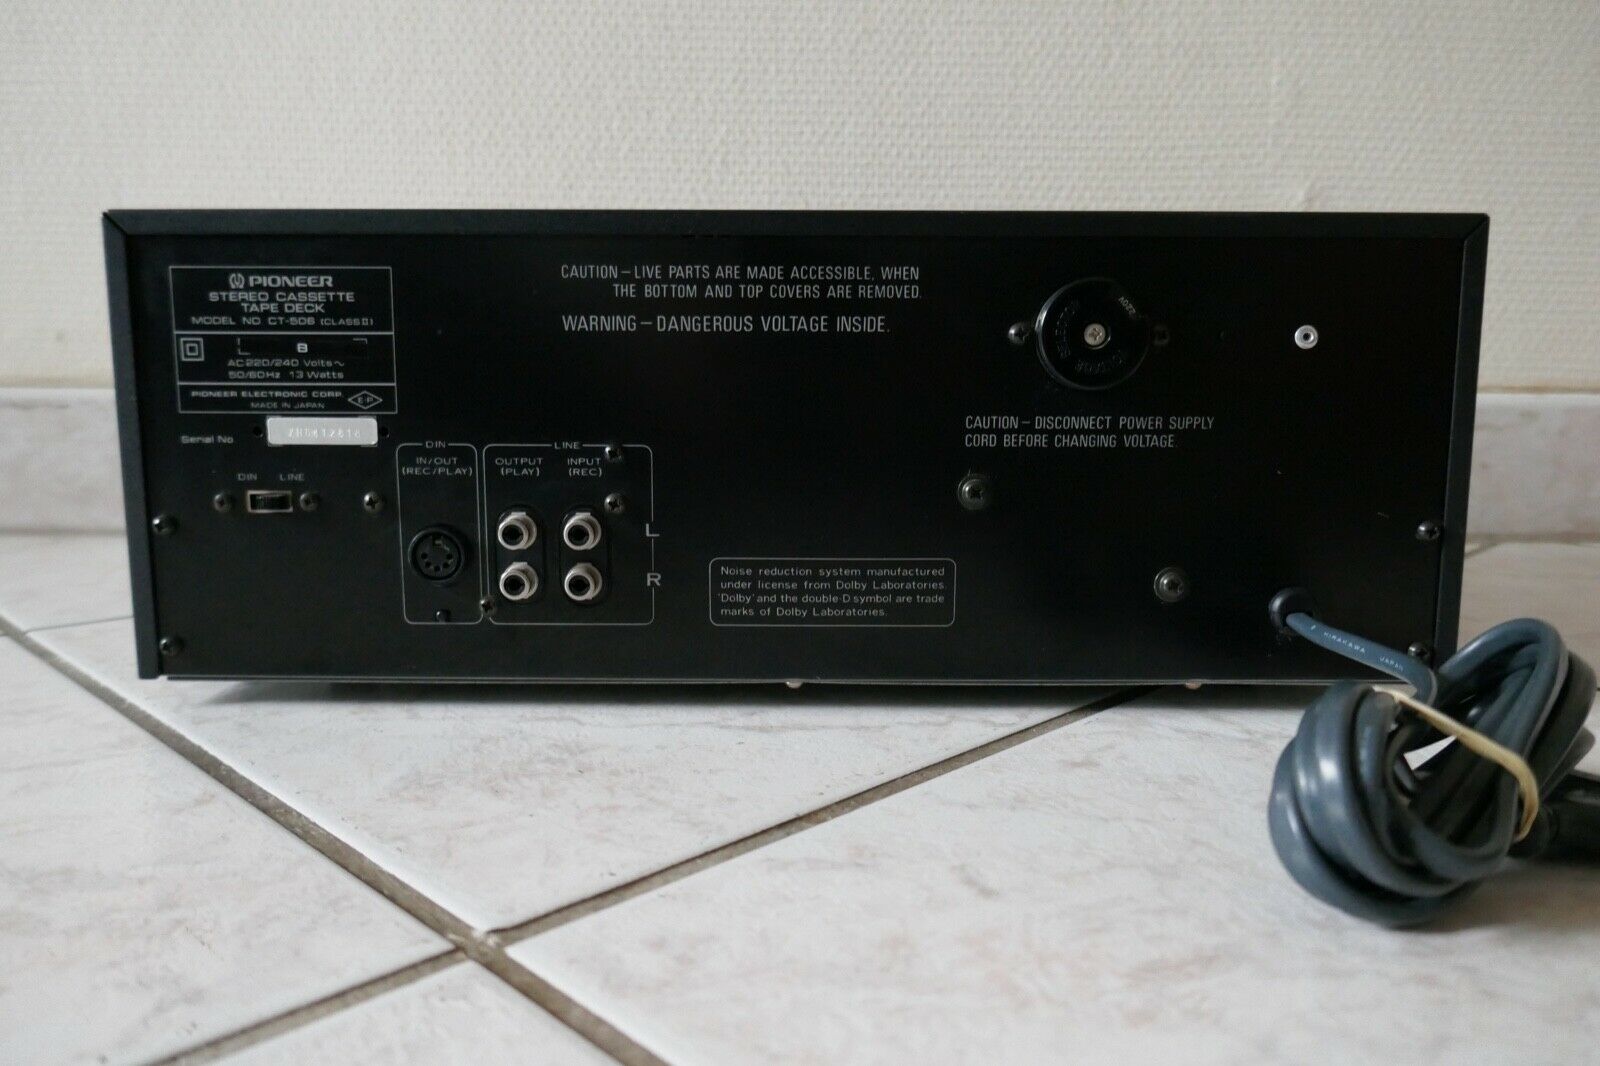 lecteur cassette tape deck pioneer ct-506 vintage occasion